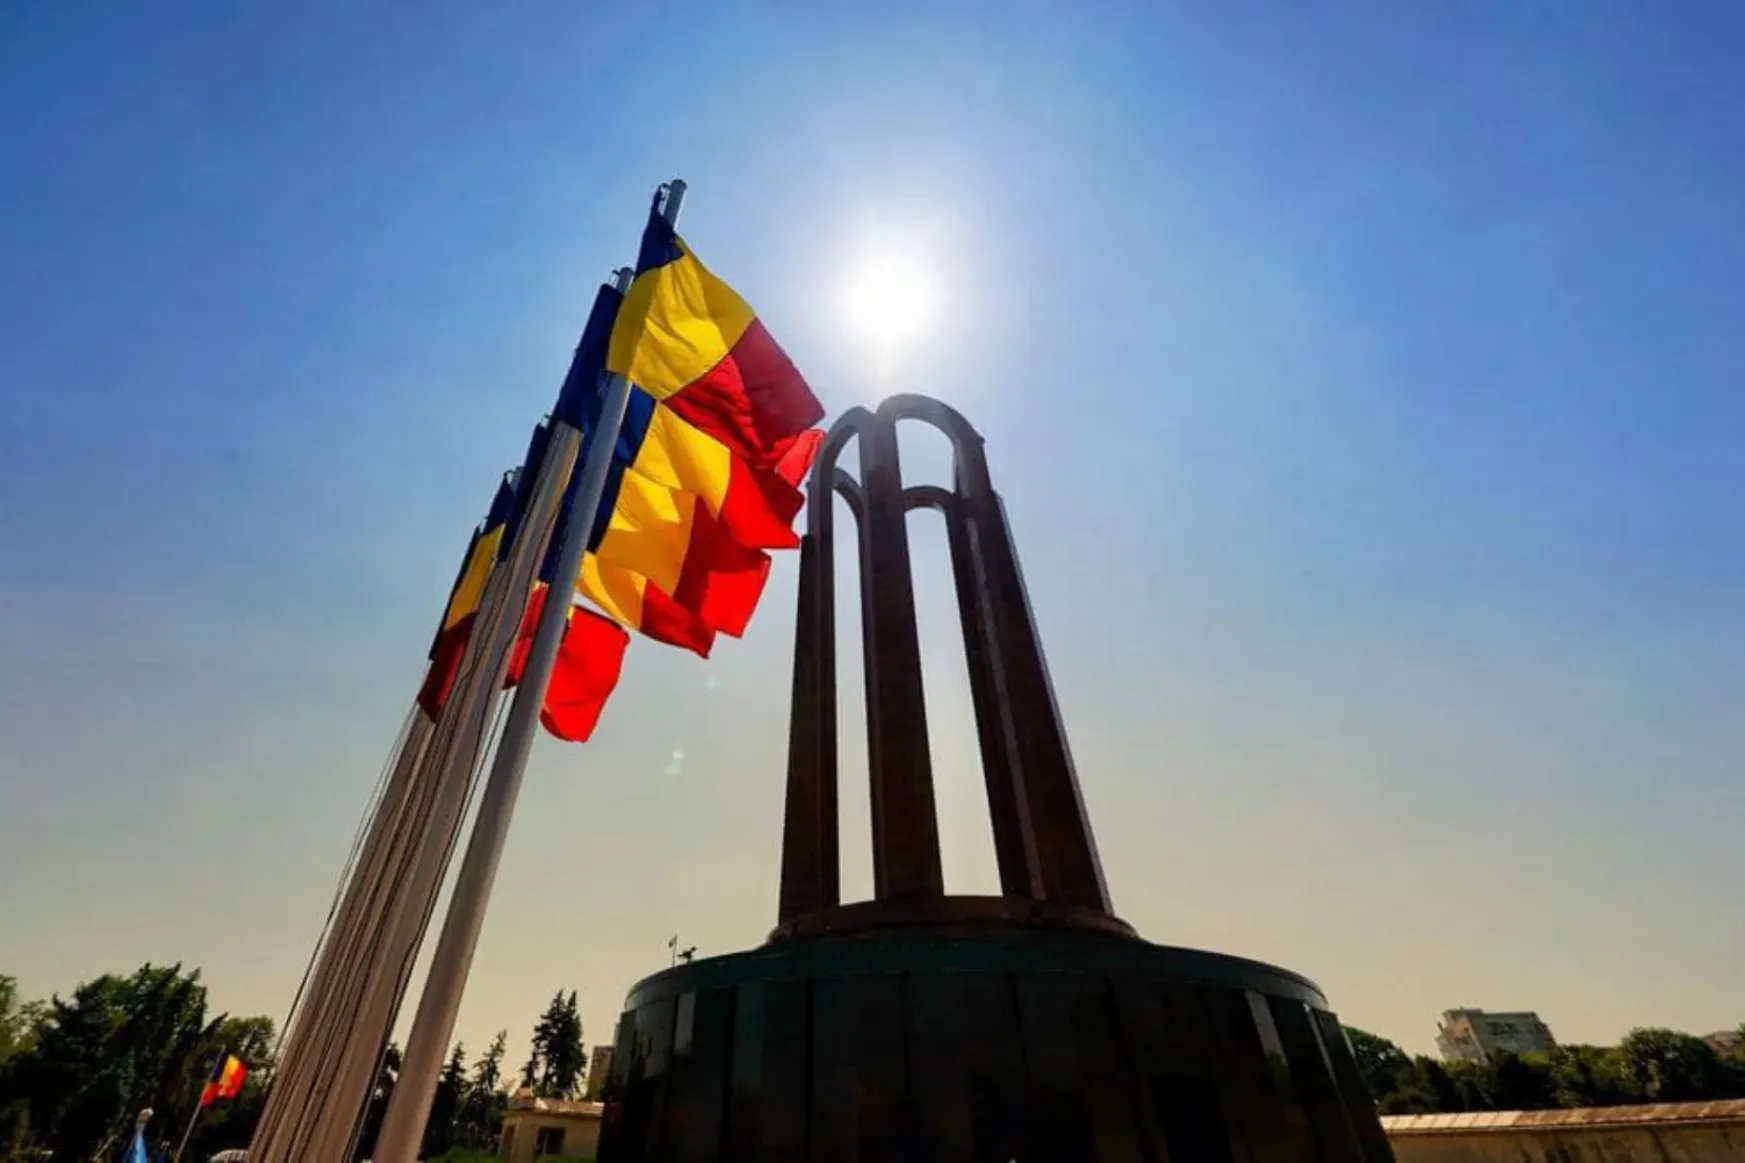 Román védelmi miniszter Hargita megyében: akkor fejlődhet az ország, ha a többség és kisebbség tiszteli egymást